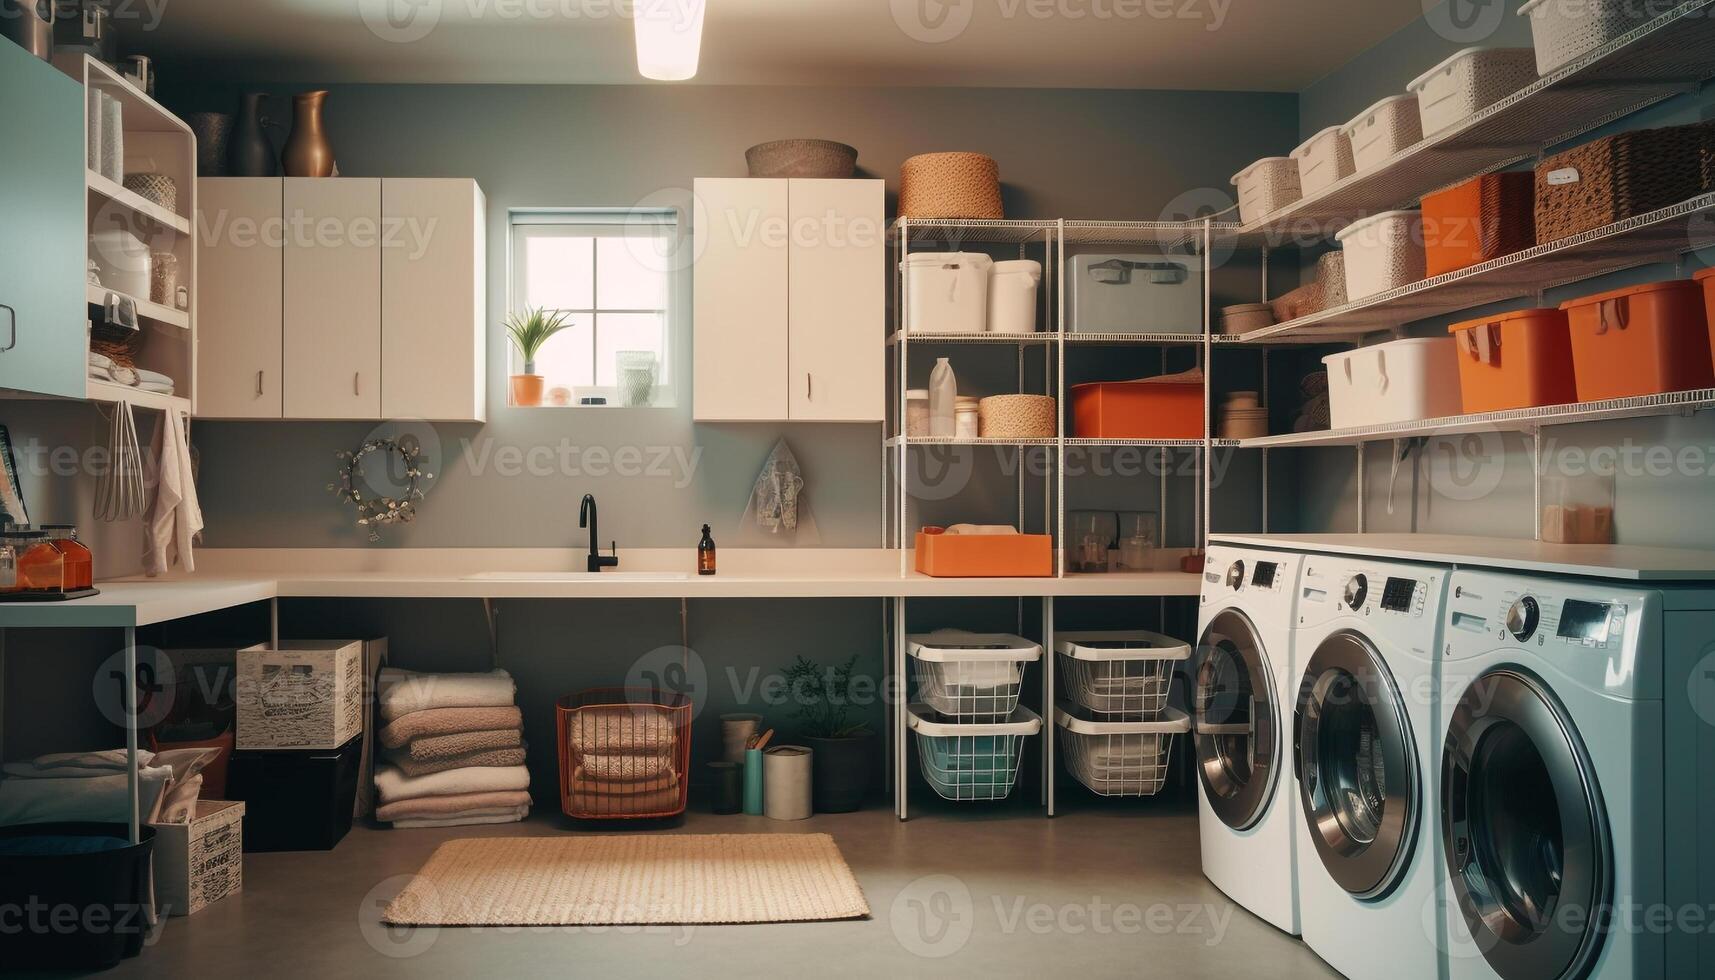 moderno doméstico cozinha com limpar \ limpo eletrodomésticos, elegante decoração, e arrumado prateleiras gerado de ai foto